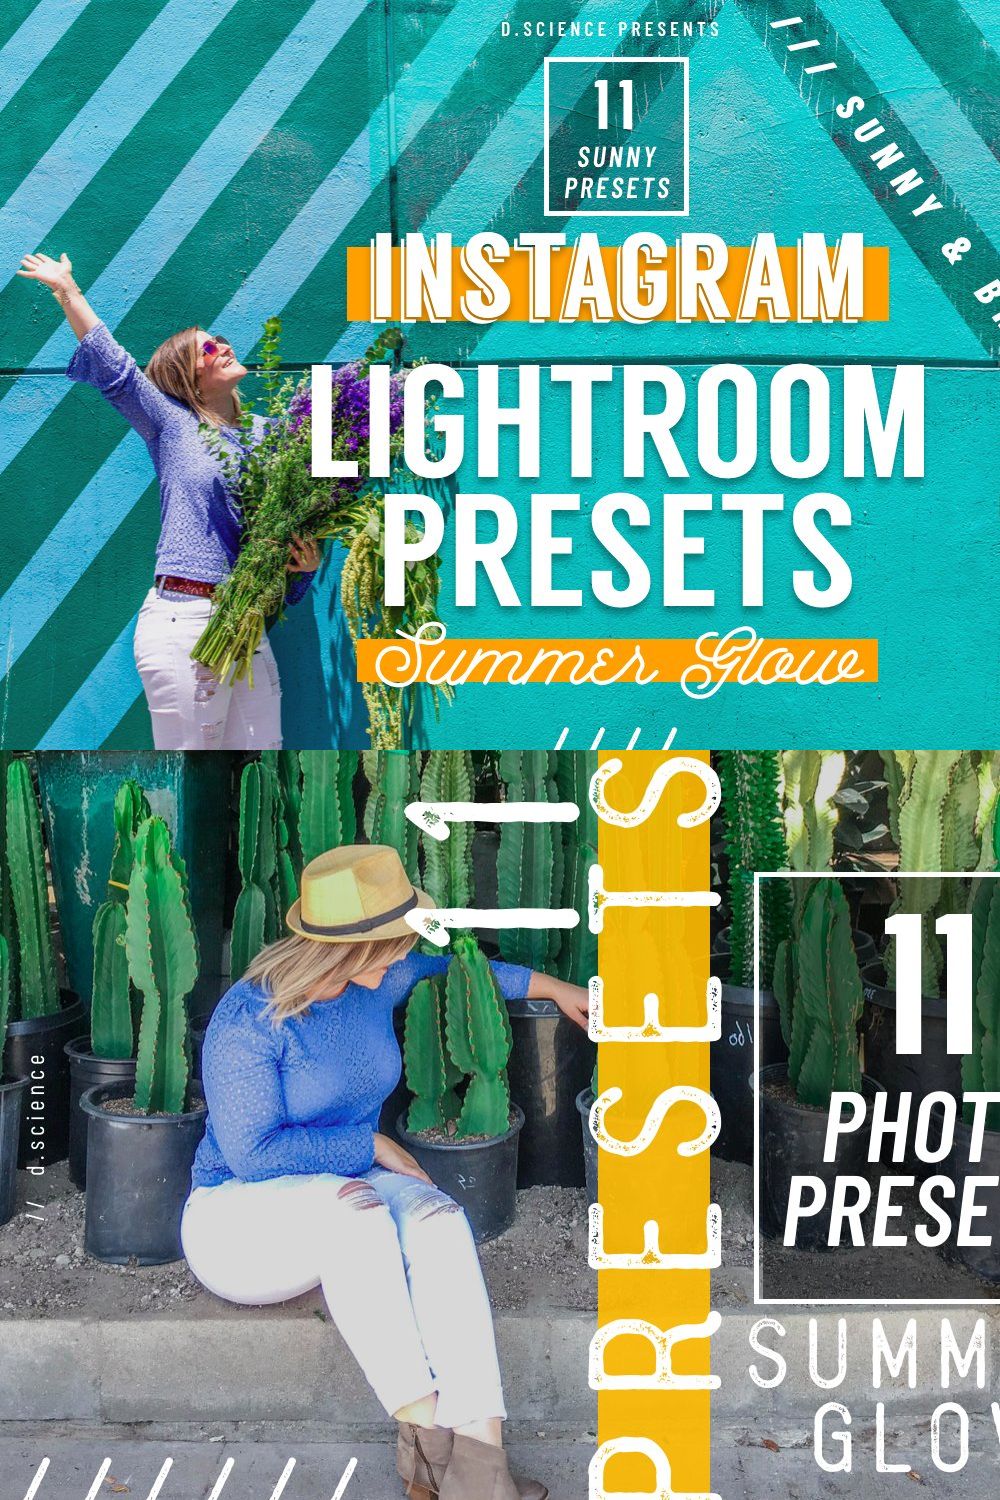 Lightroom Preset Instagram Filter pinterest preview image.